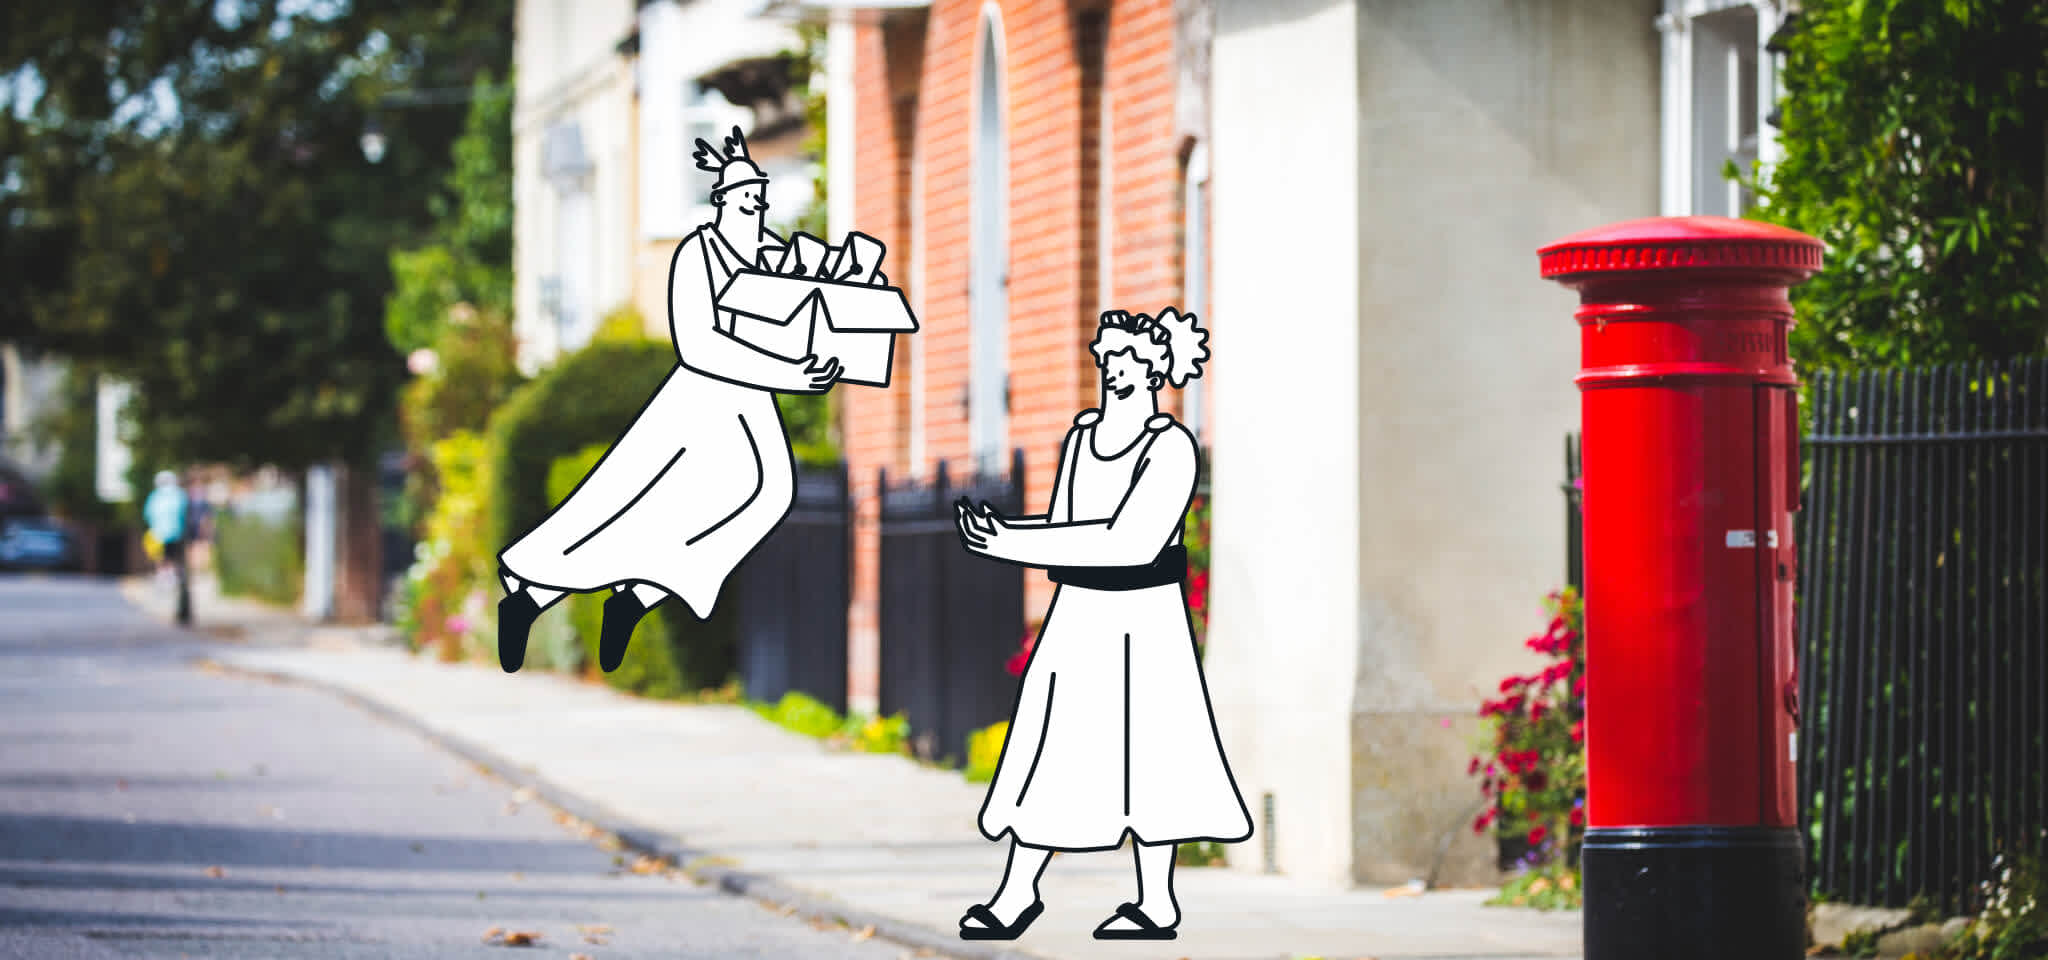 Hermes überbringt Briefe an eine Göttin auf der Straße